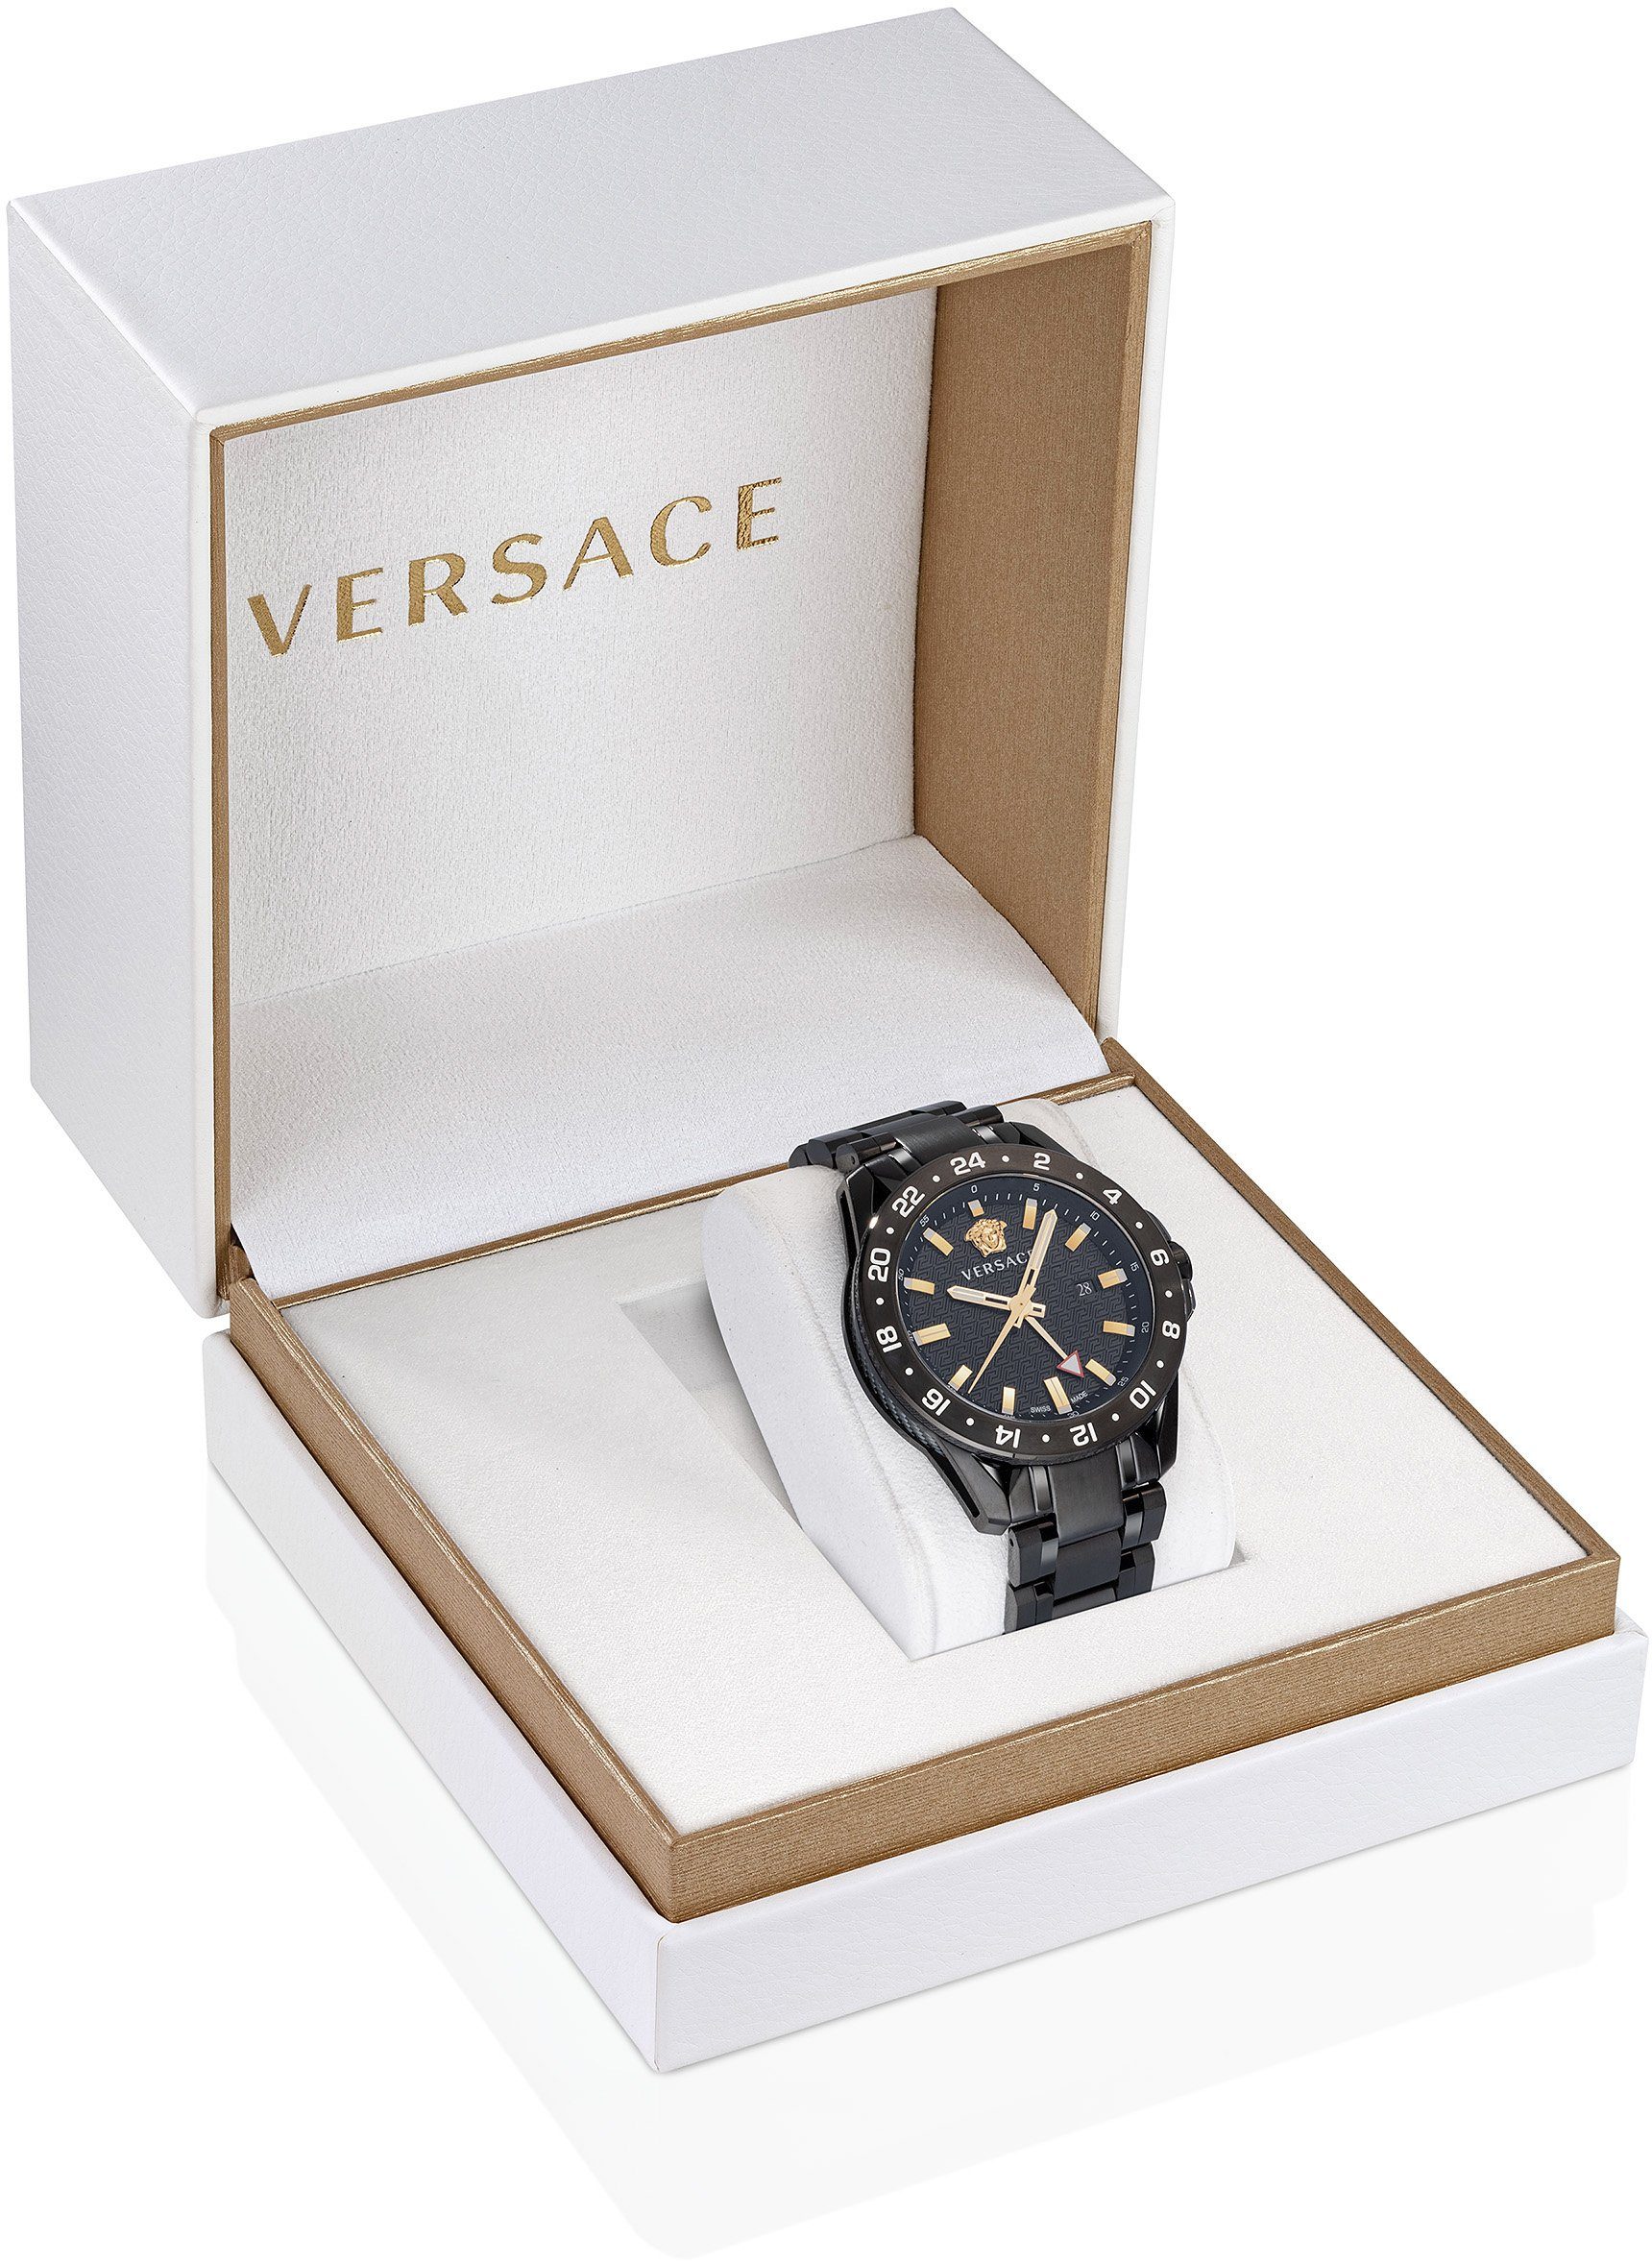 Versace Schweizer VE2W00622 TECH SPORT GMT, Uhr